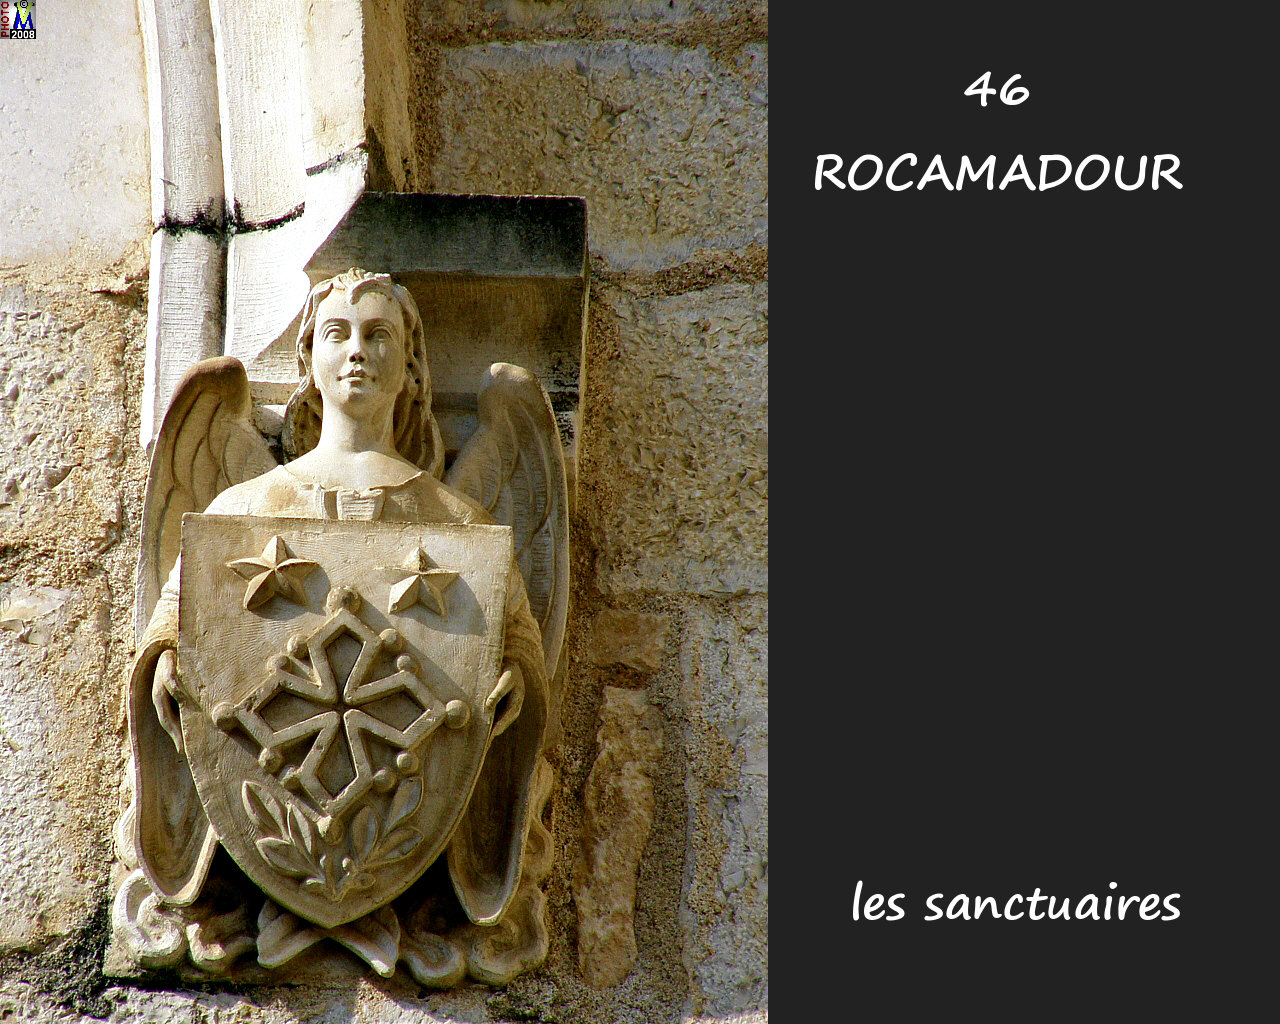 46ROCAMADOUR_sanctuaires_256.jpg